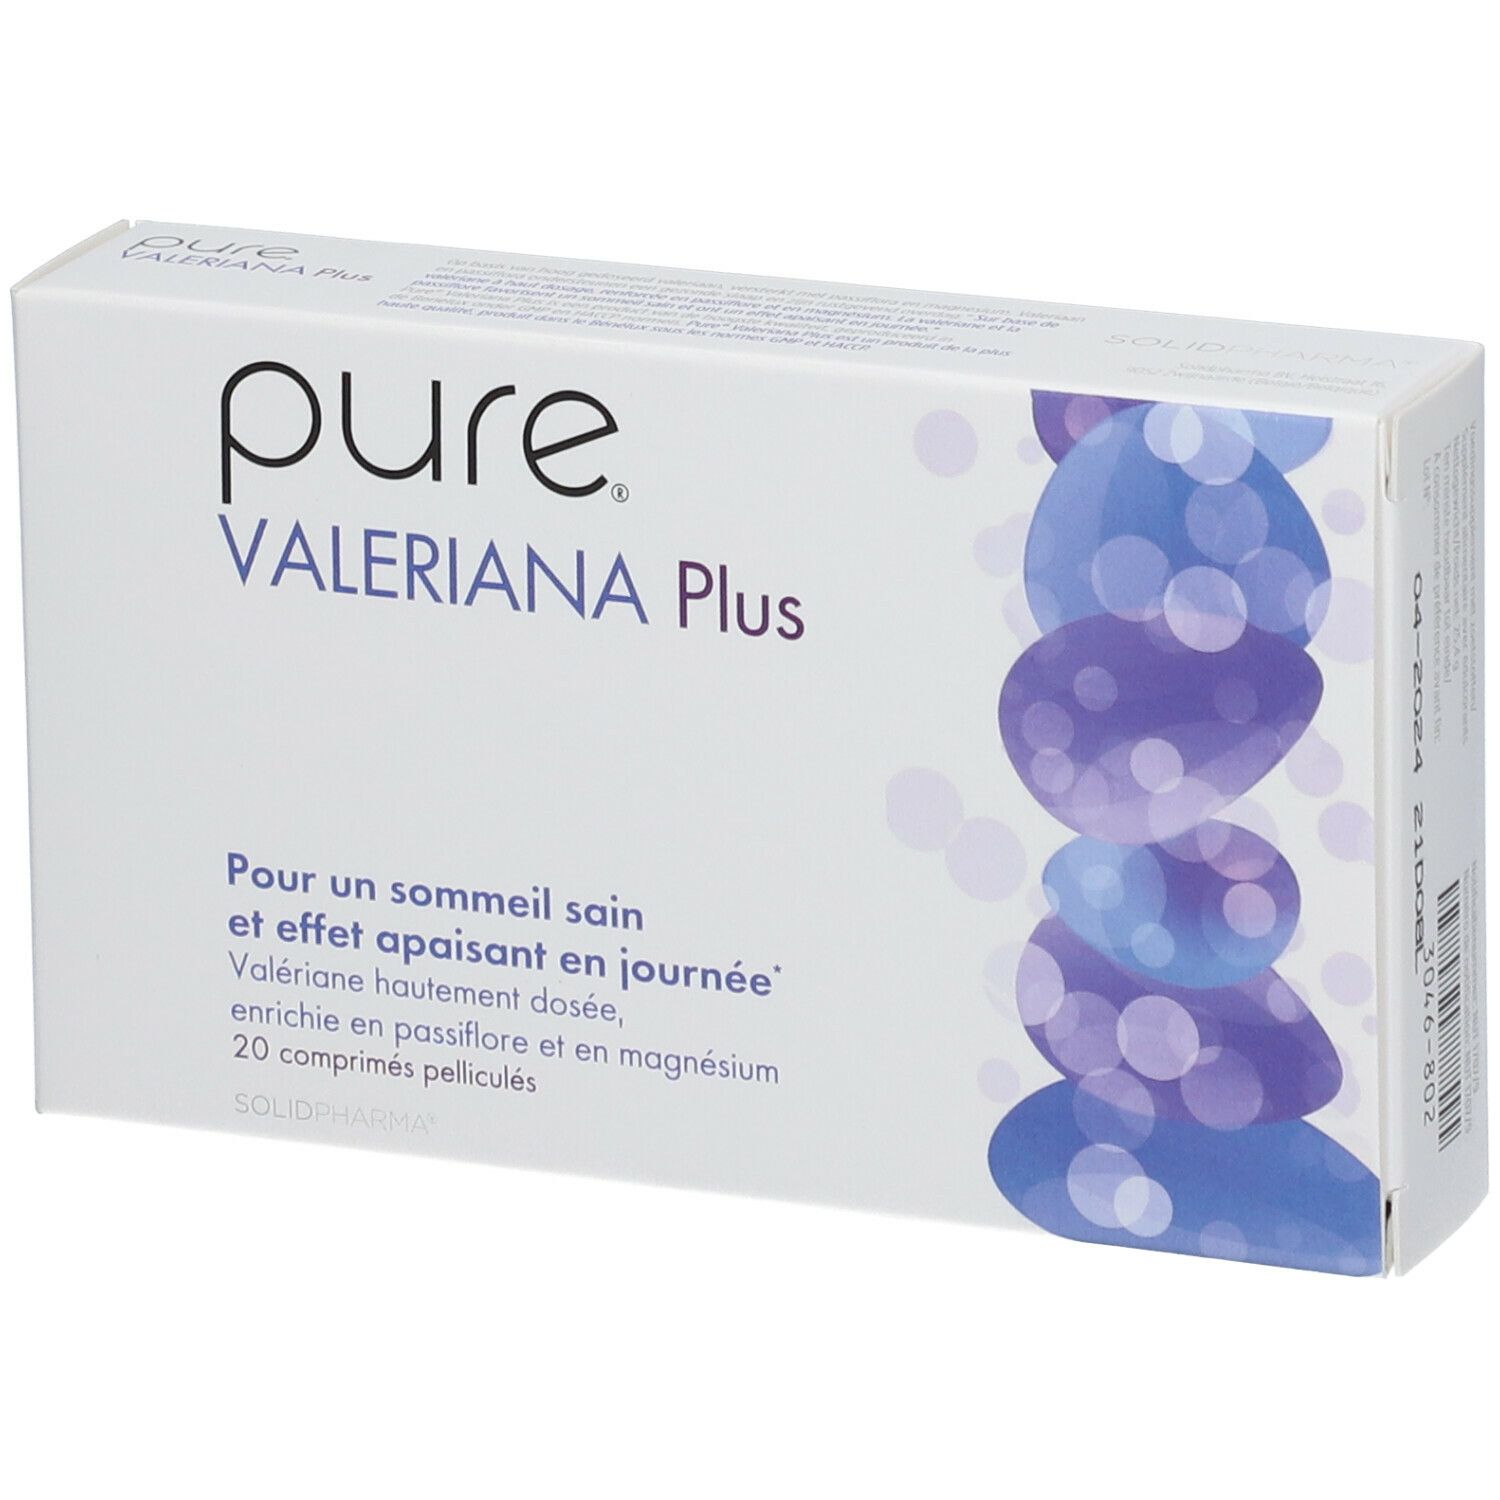 Pure® Valeriana Plus